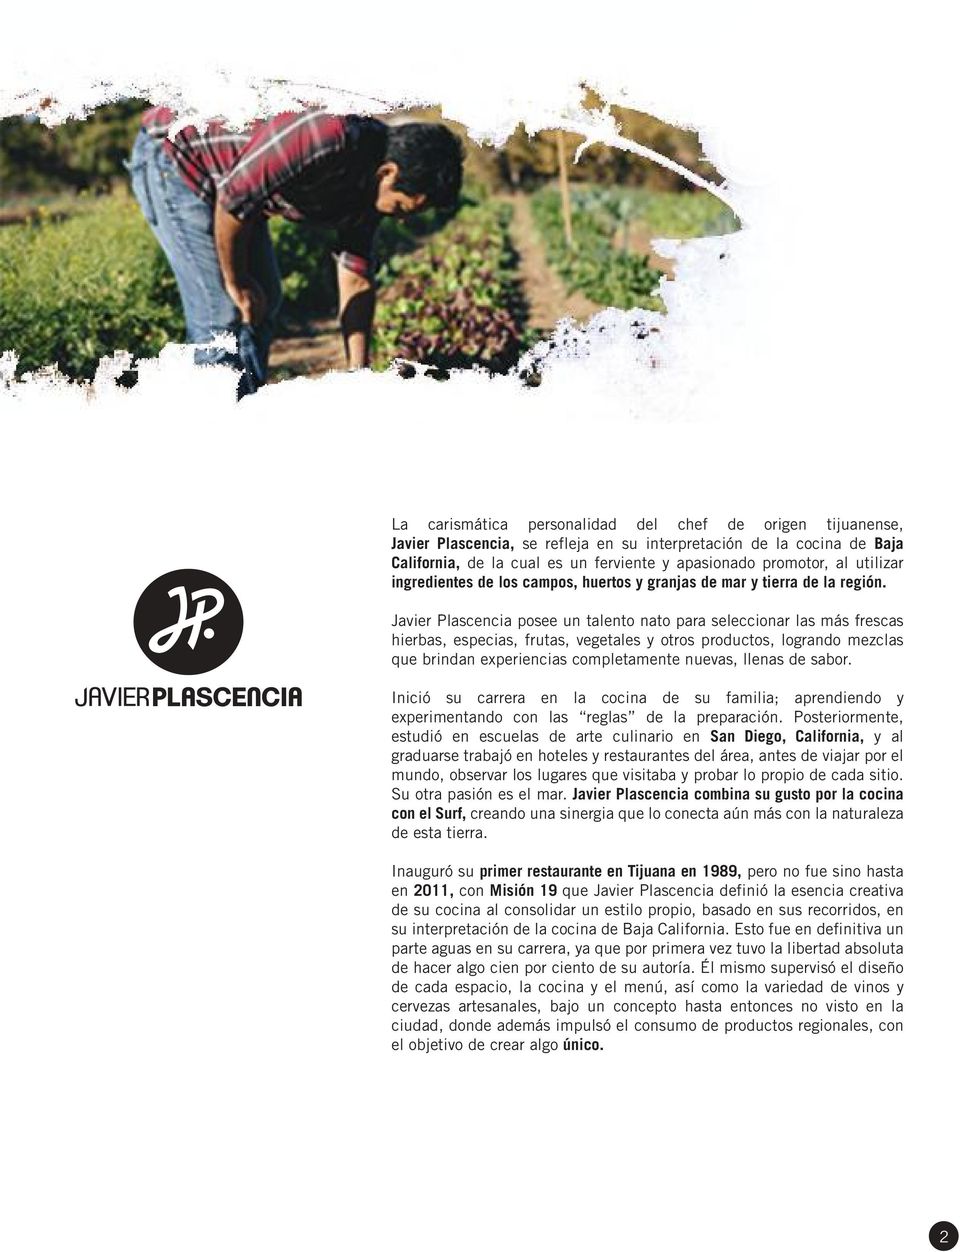 Javier Plascencia posee un talento nato para seleccionar las más frescas hierbas, especias, frutas, vegetales y otros productos, logrando mezclas que brindan experiencias completamente nuevas, llenas